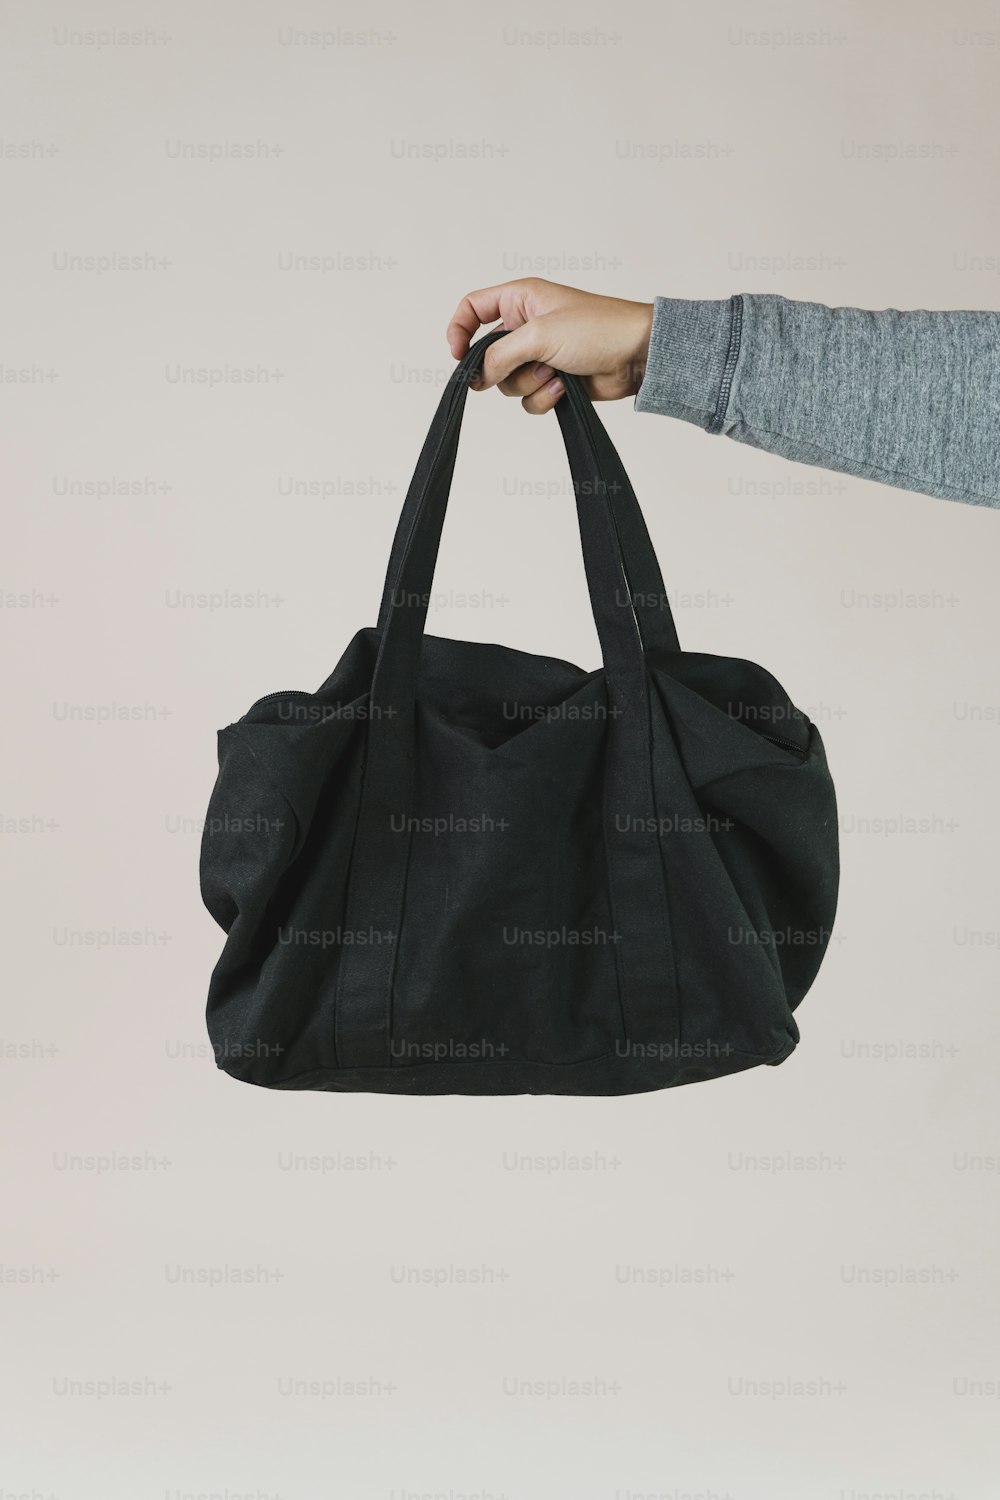 una persona che tiene in mano una borsa nera